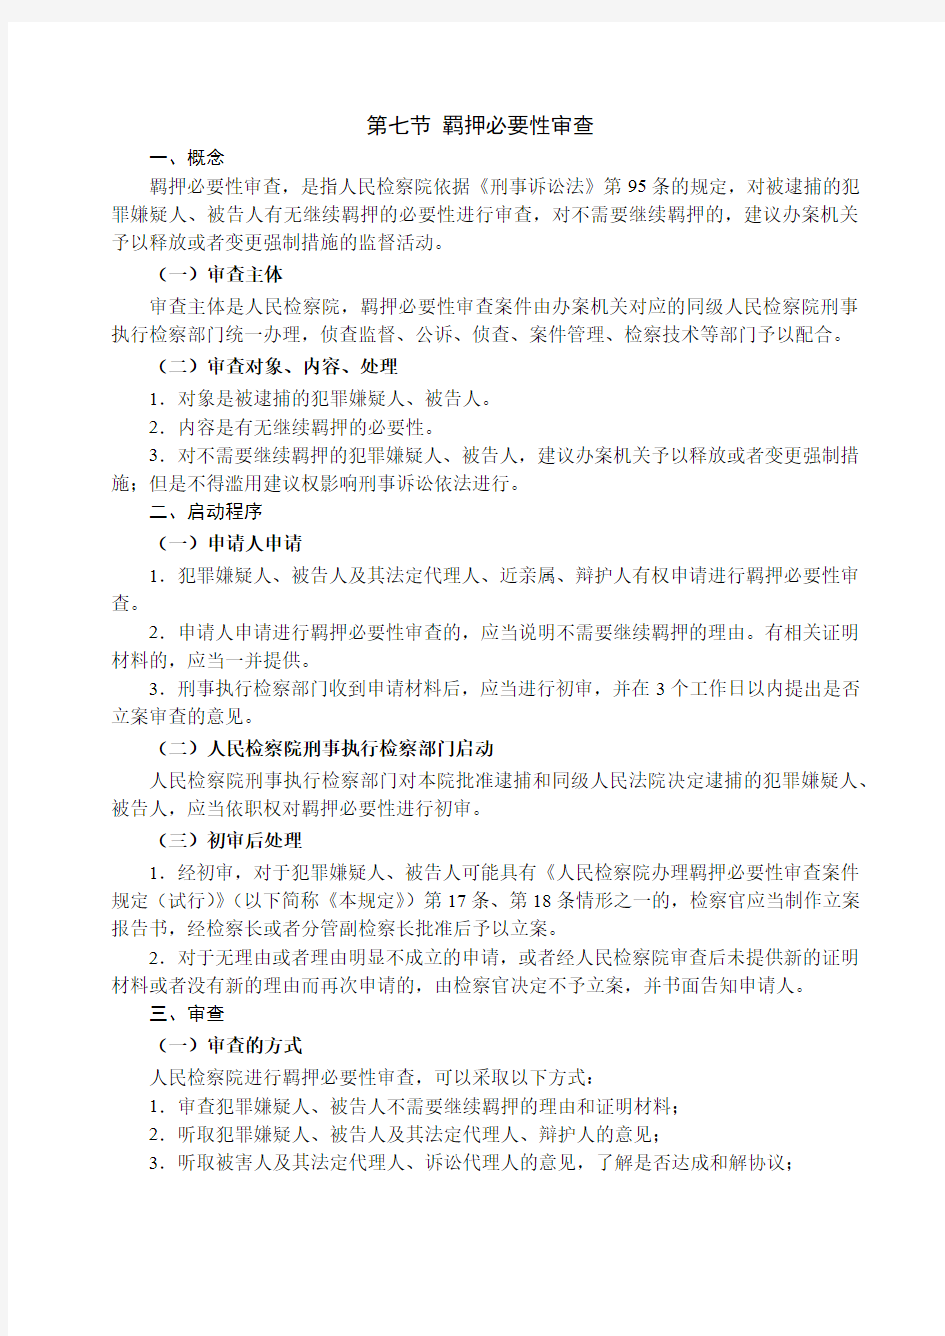 独角兽2019刑法讲义-第18节刑事诉讼法-强制措施(3)-谢安平